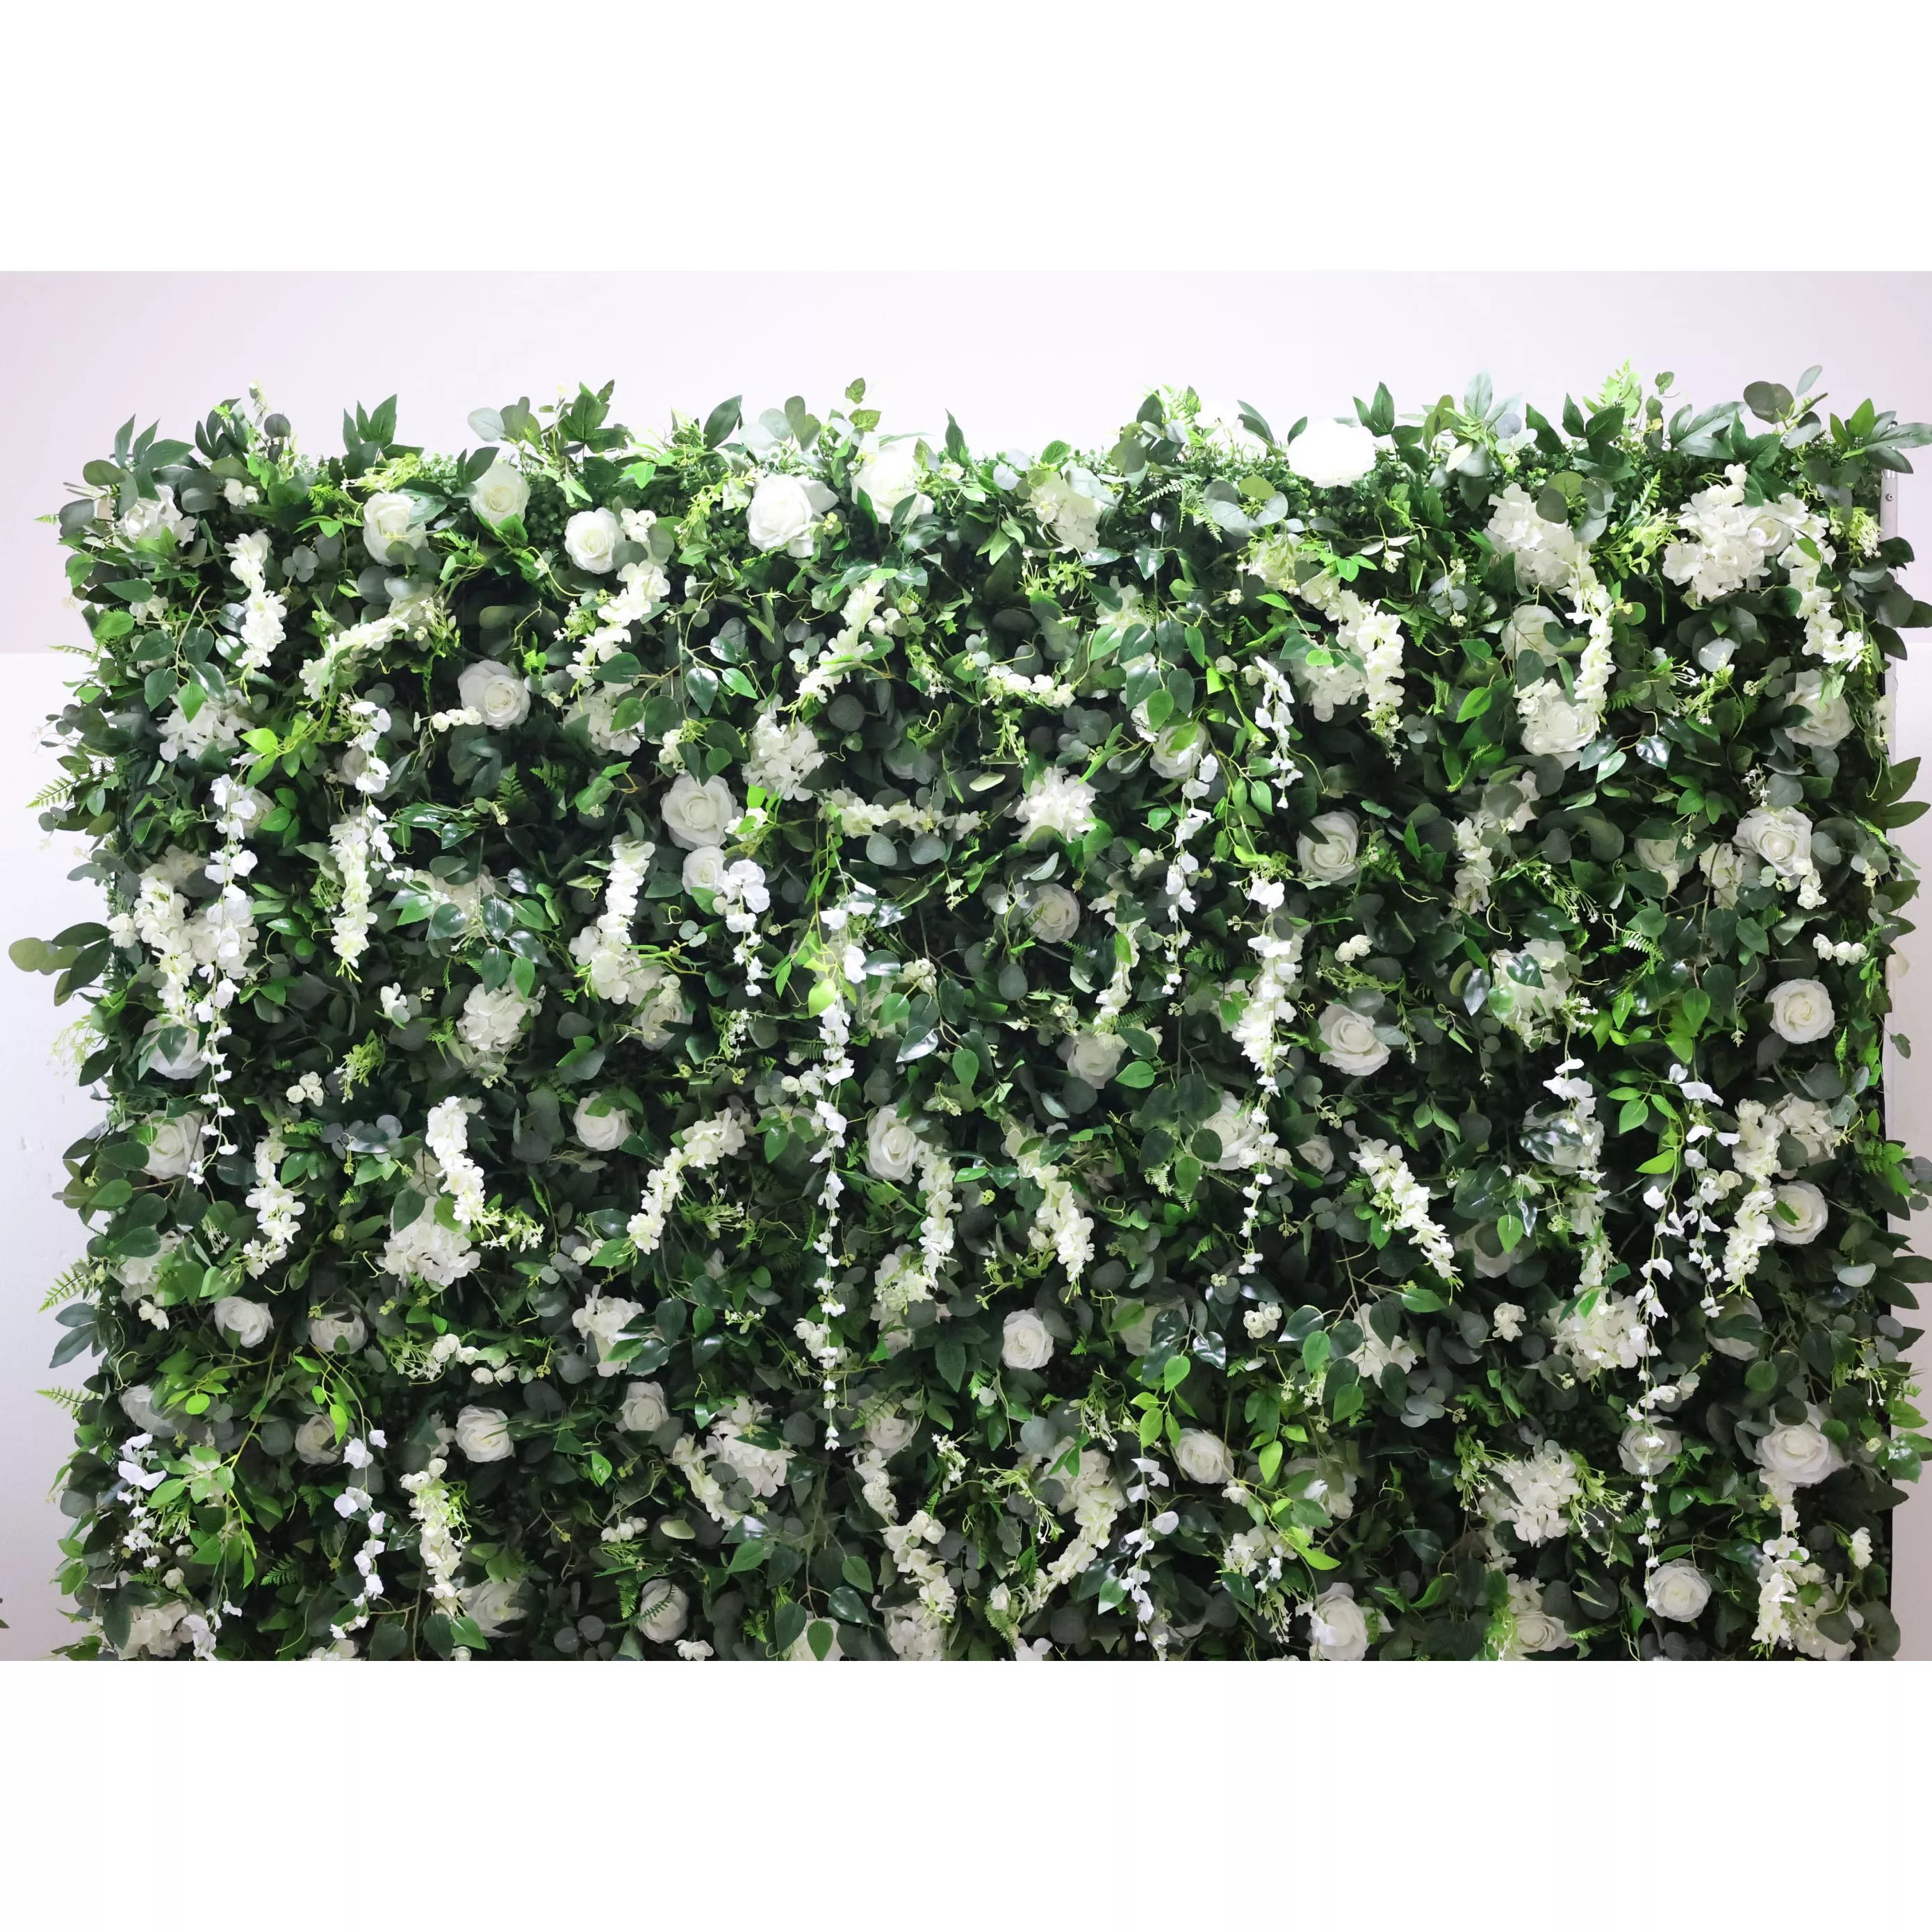 Valar Flowers Roll Up Tissu Fleur blanche artificielle et feuilles vertes vives Toile de fond murale florale pour mariage, décoration de fête florale, photographie d'événement -VF-071-3 